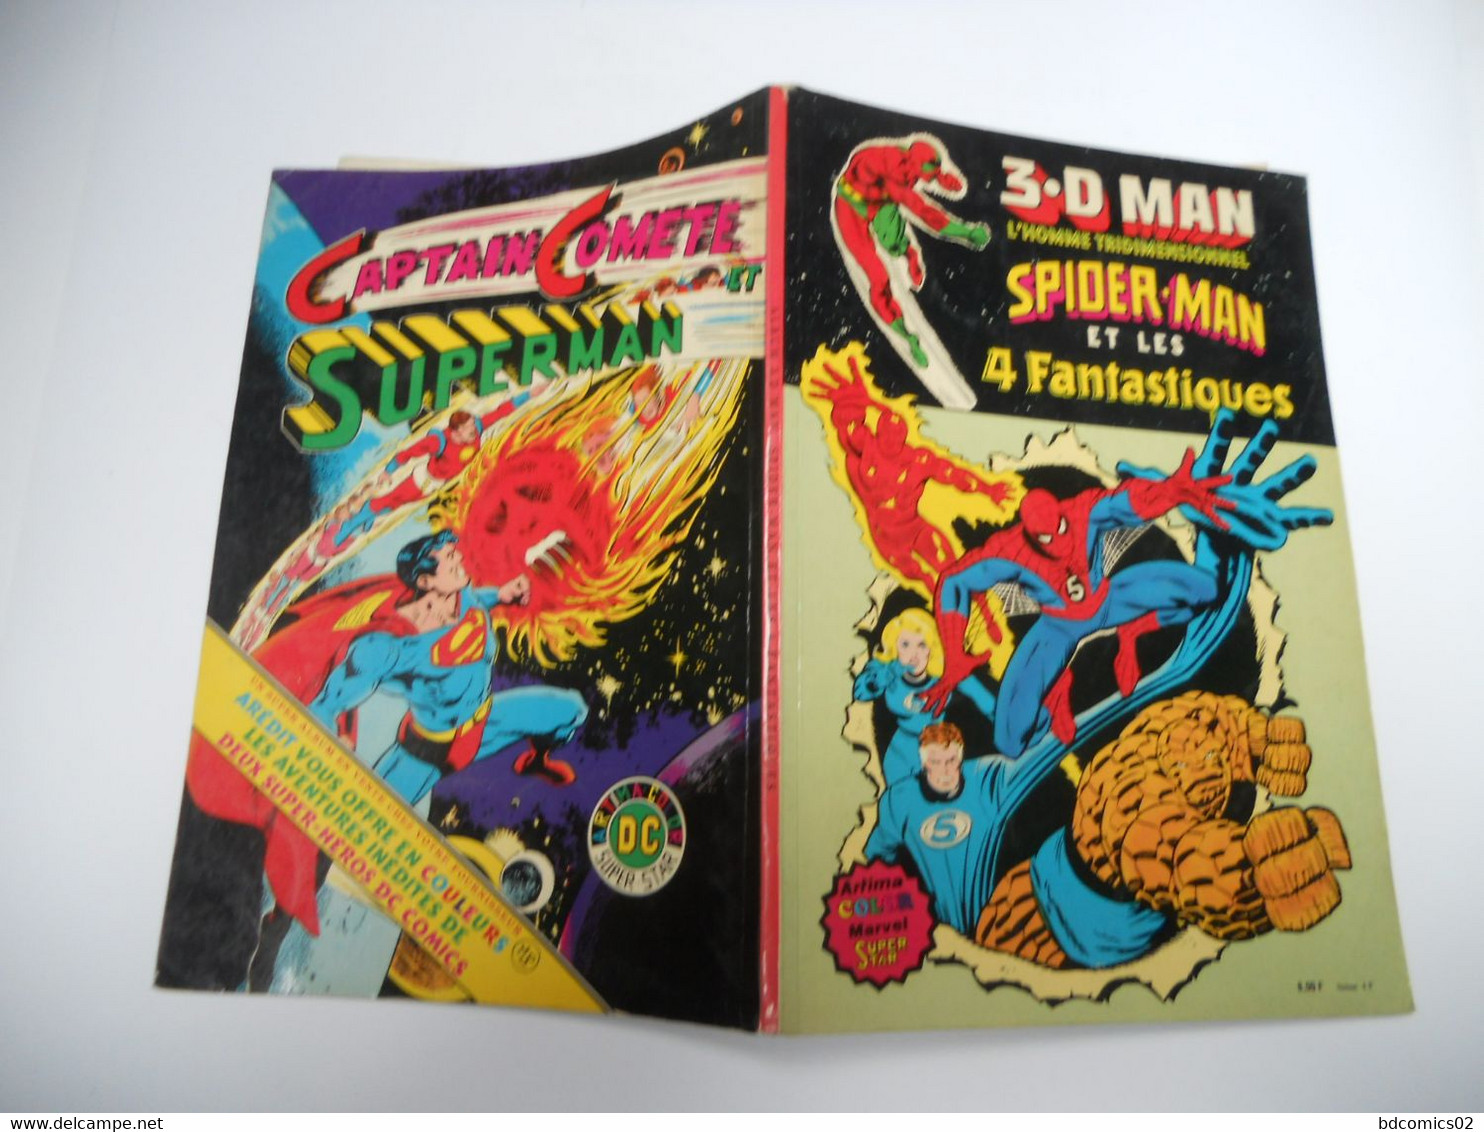 3.D Man,L'HOMME TRIDIMENTIONNEL  Spider-Man Et Les 4 Fantastiques - CRAIG, Jim AREDIT 1981 - Spiderman